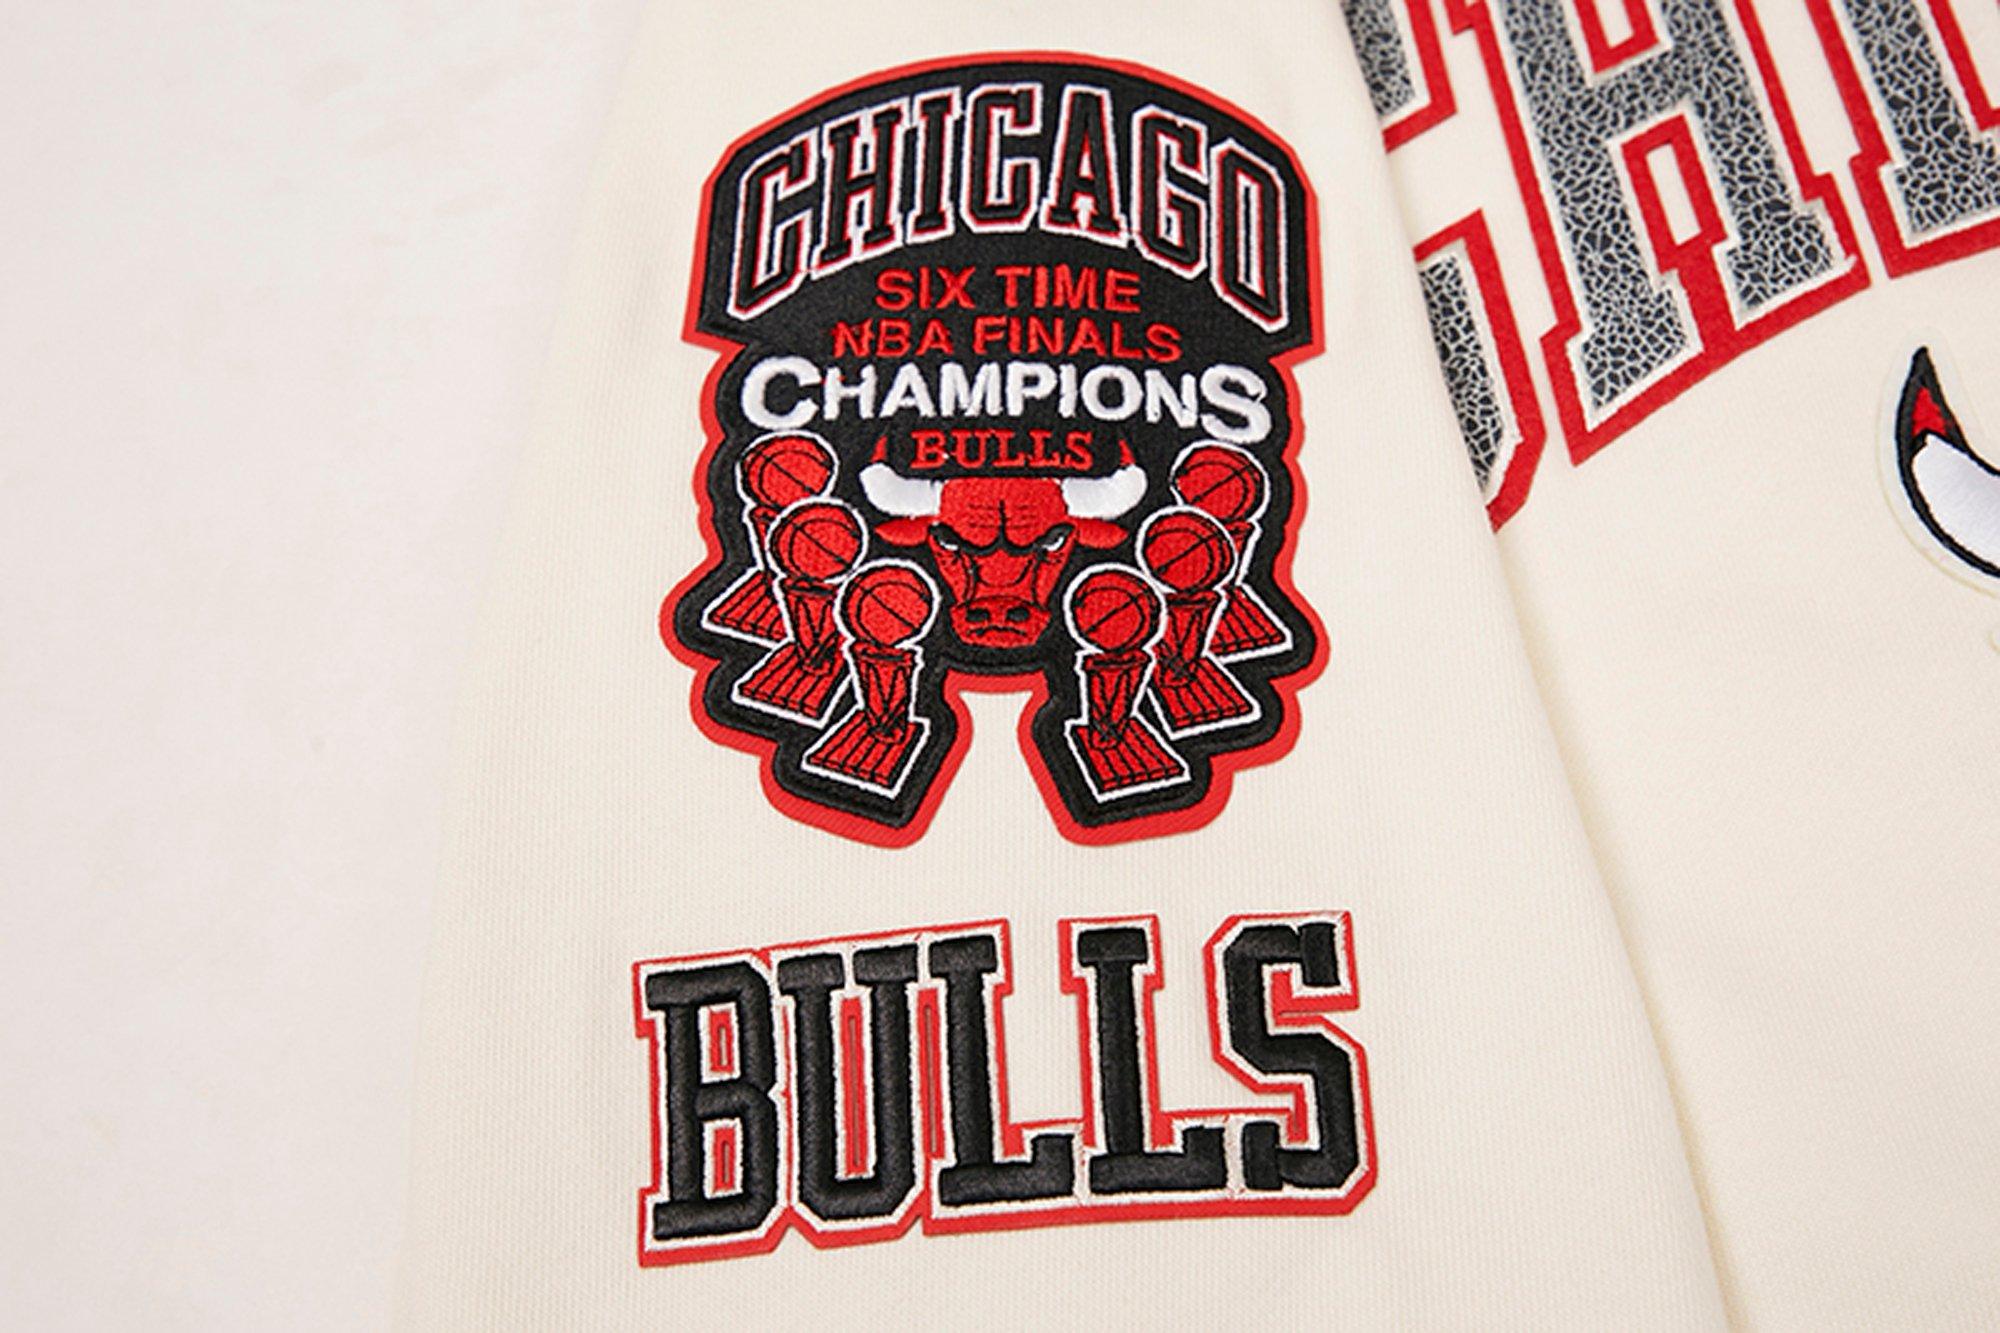 Pro Standard Men's Chicago Bulls Cool Grey 11 Patch T-Shirt - Hibbett